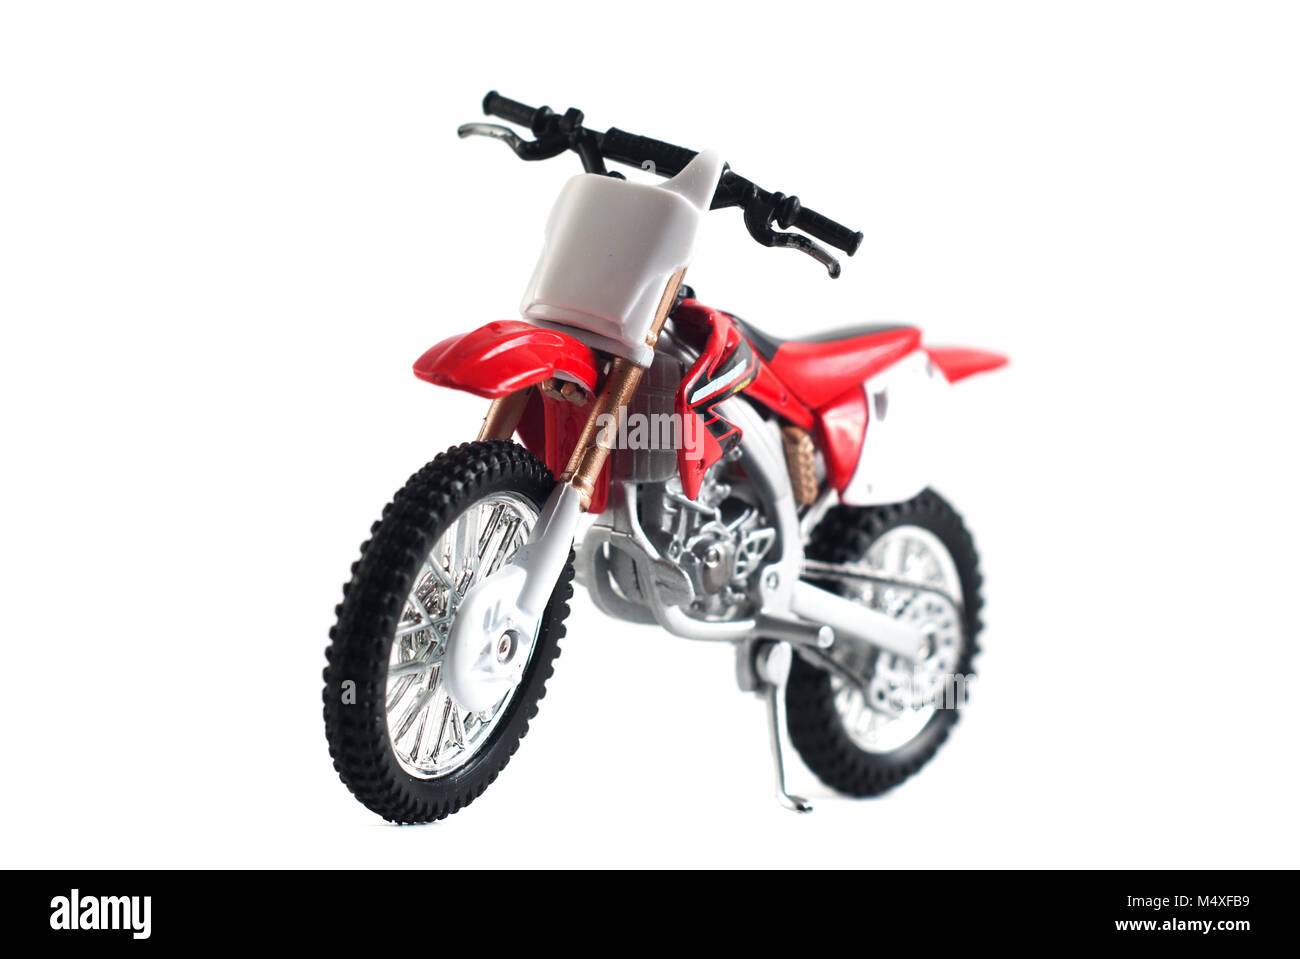 Red moto giocattolo isolato rosso su sfondo bianco, giocattolo di